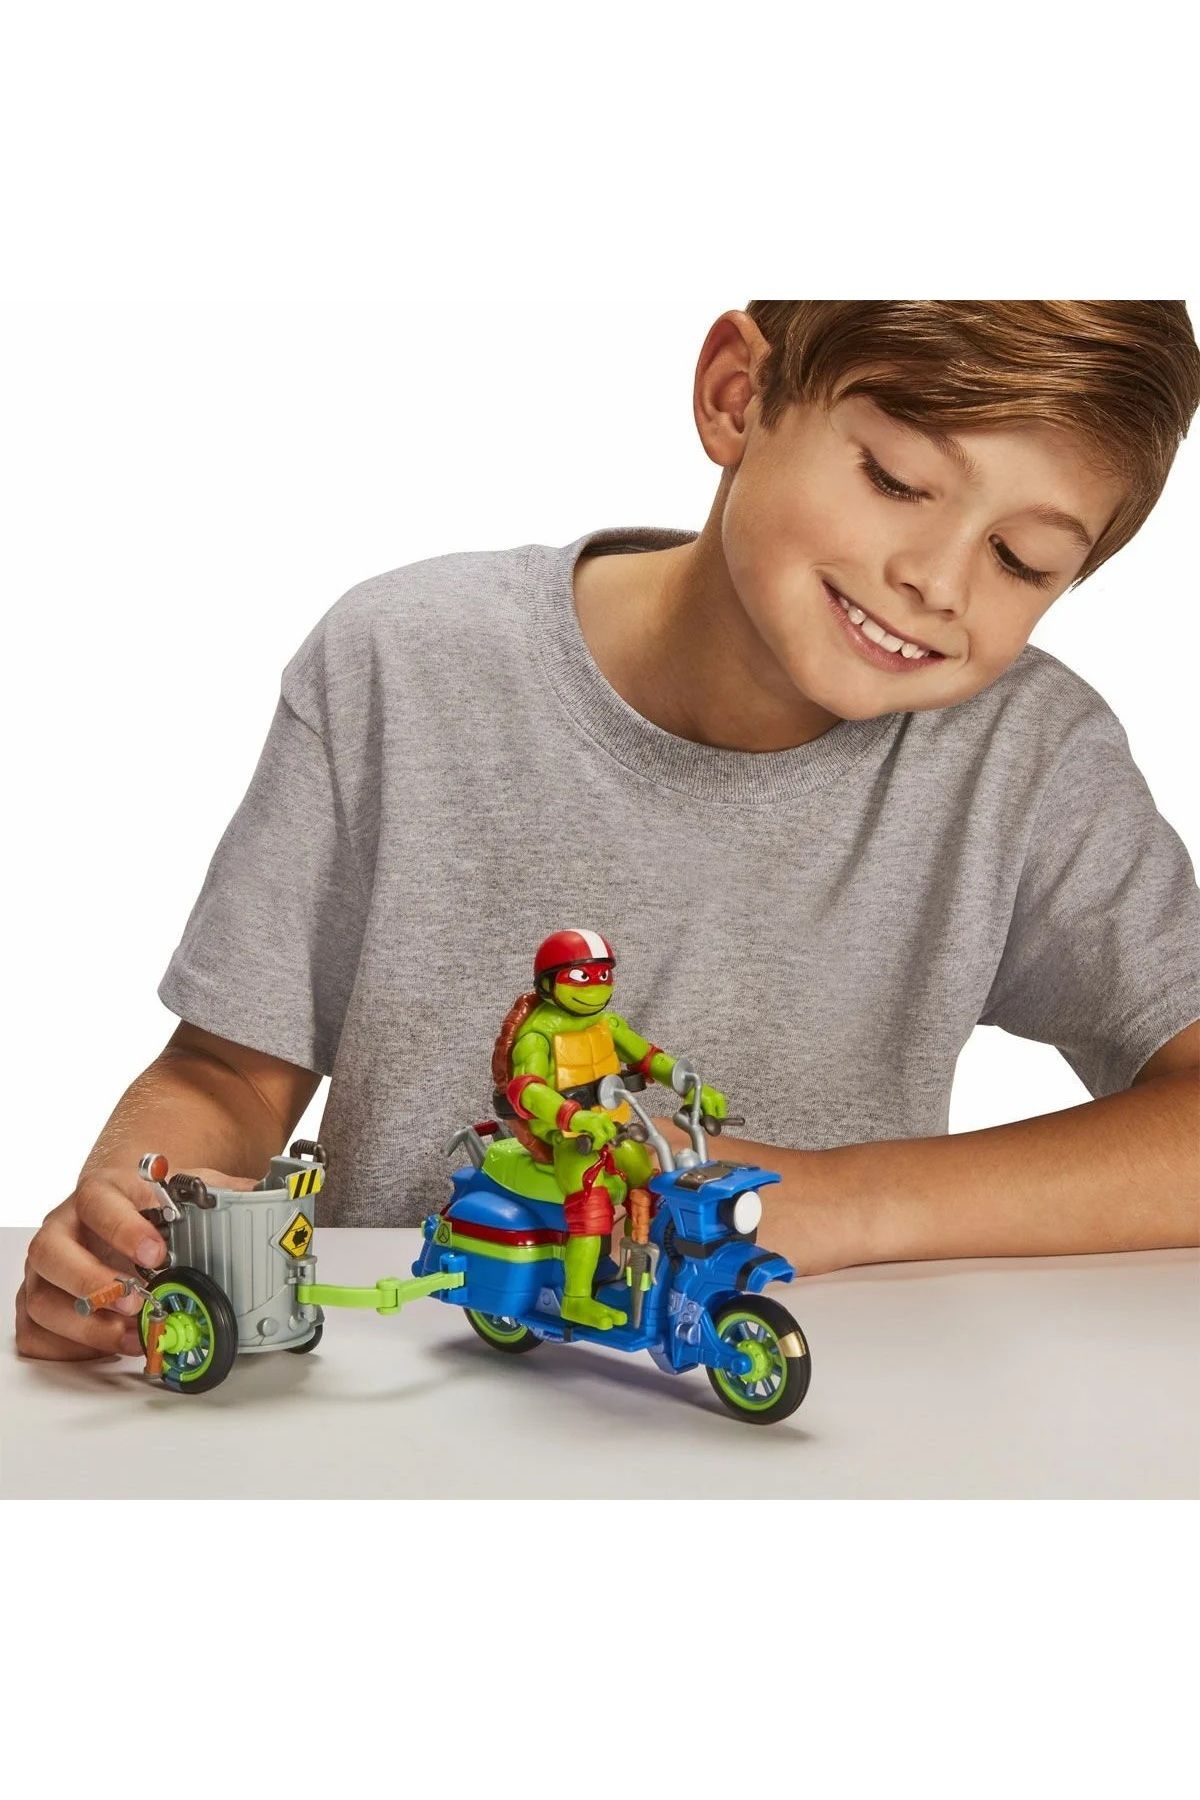 MONSTER HIGH Çocuk Yeni Eğlenceli Ninja Kaplumbağalar Araç ve Figür Oyun Seti Özel Koleksiyon